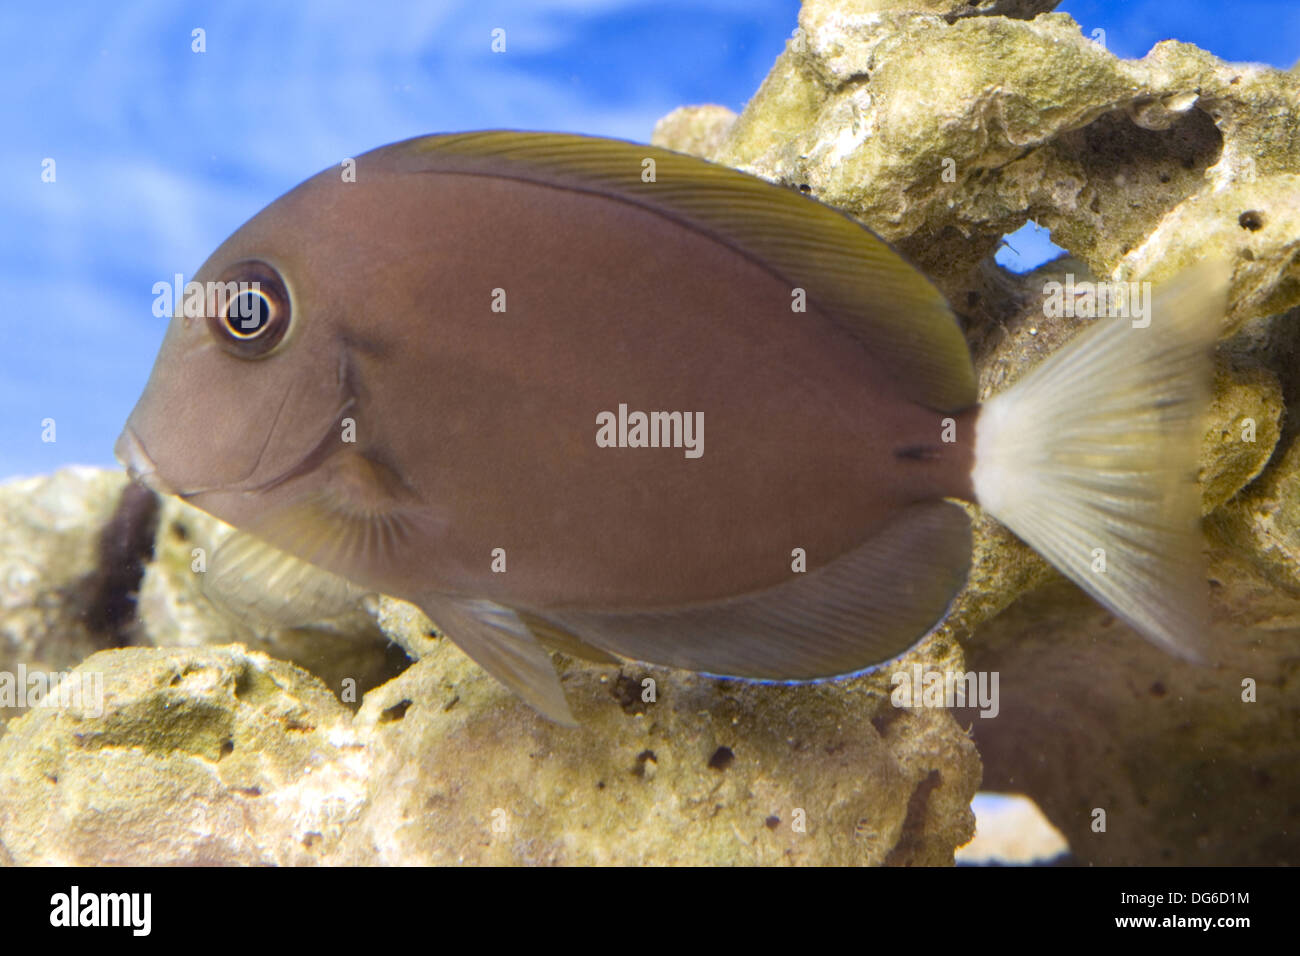 thompson's surgeonfish, acanthurus thompsoni Stock Photo